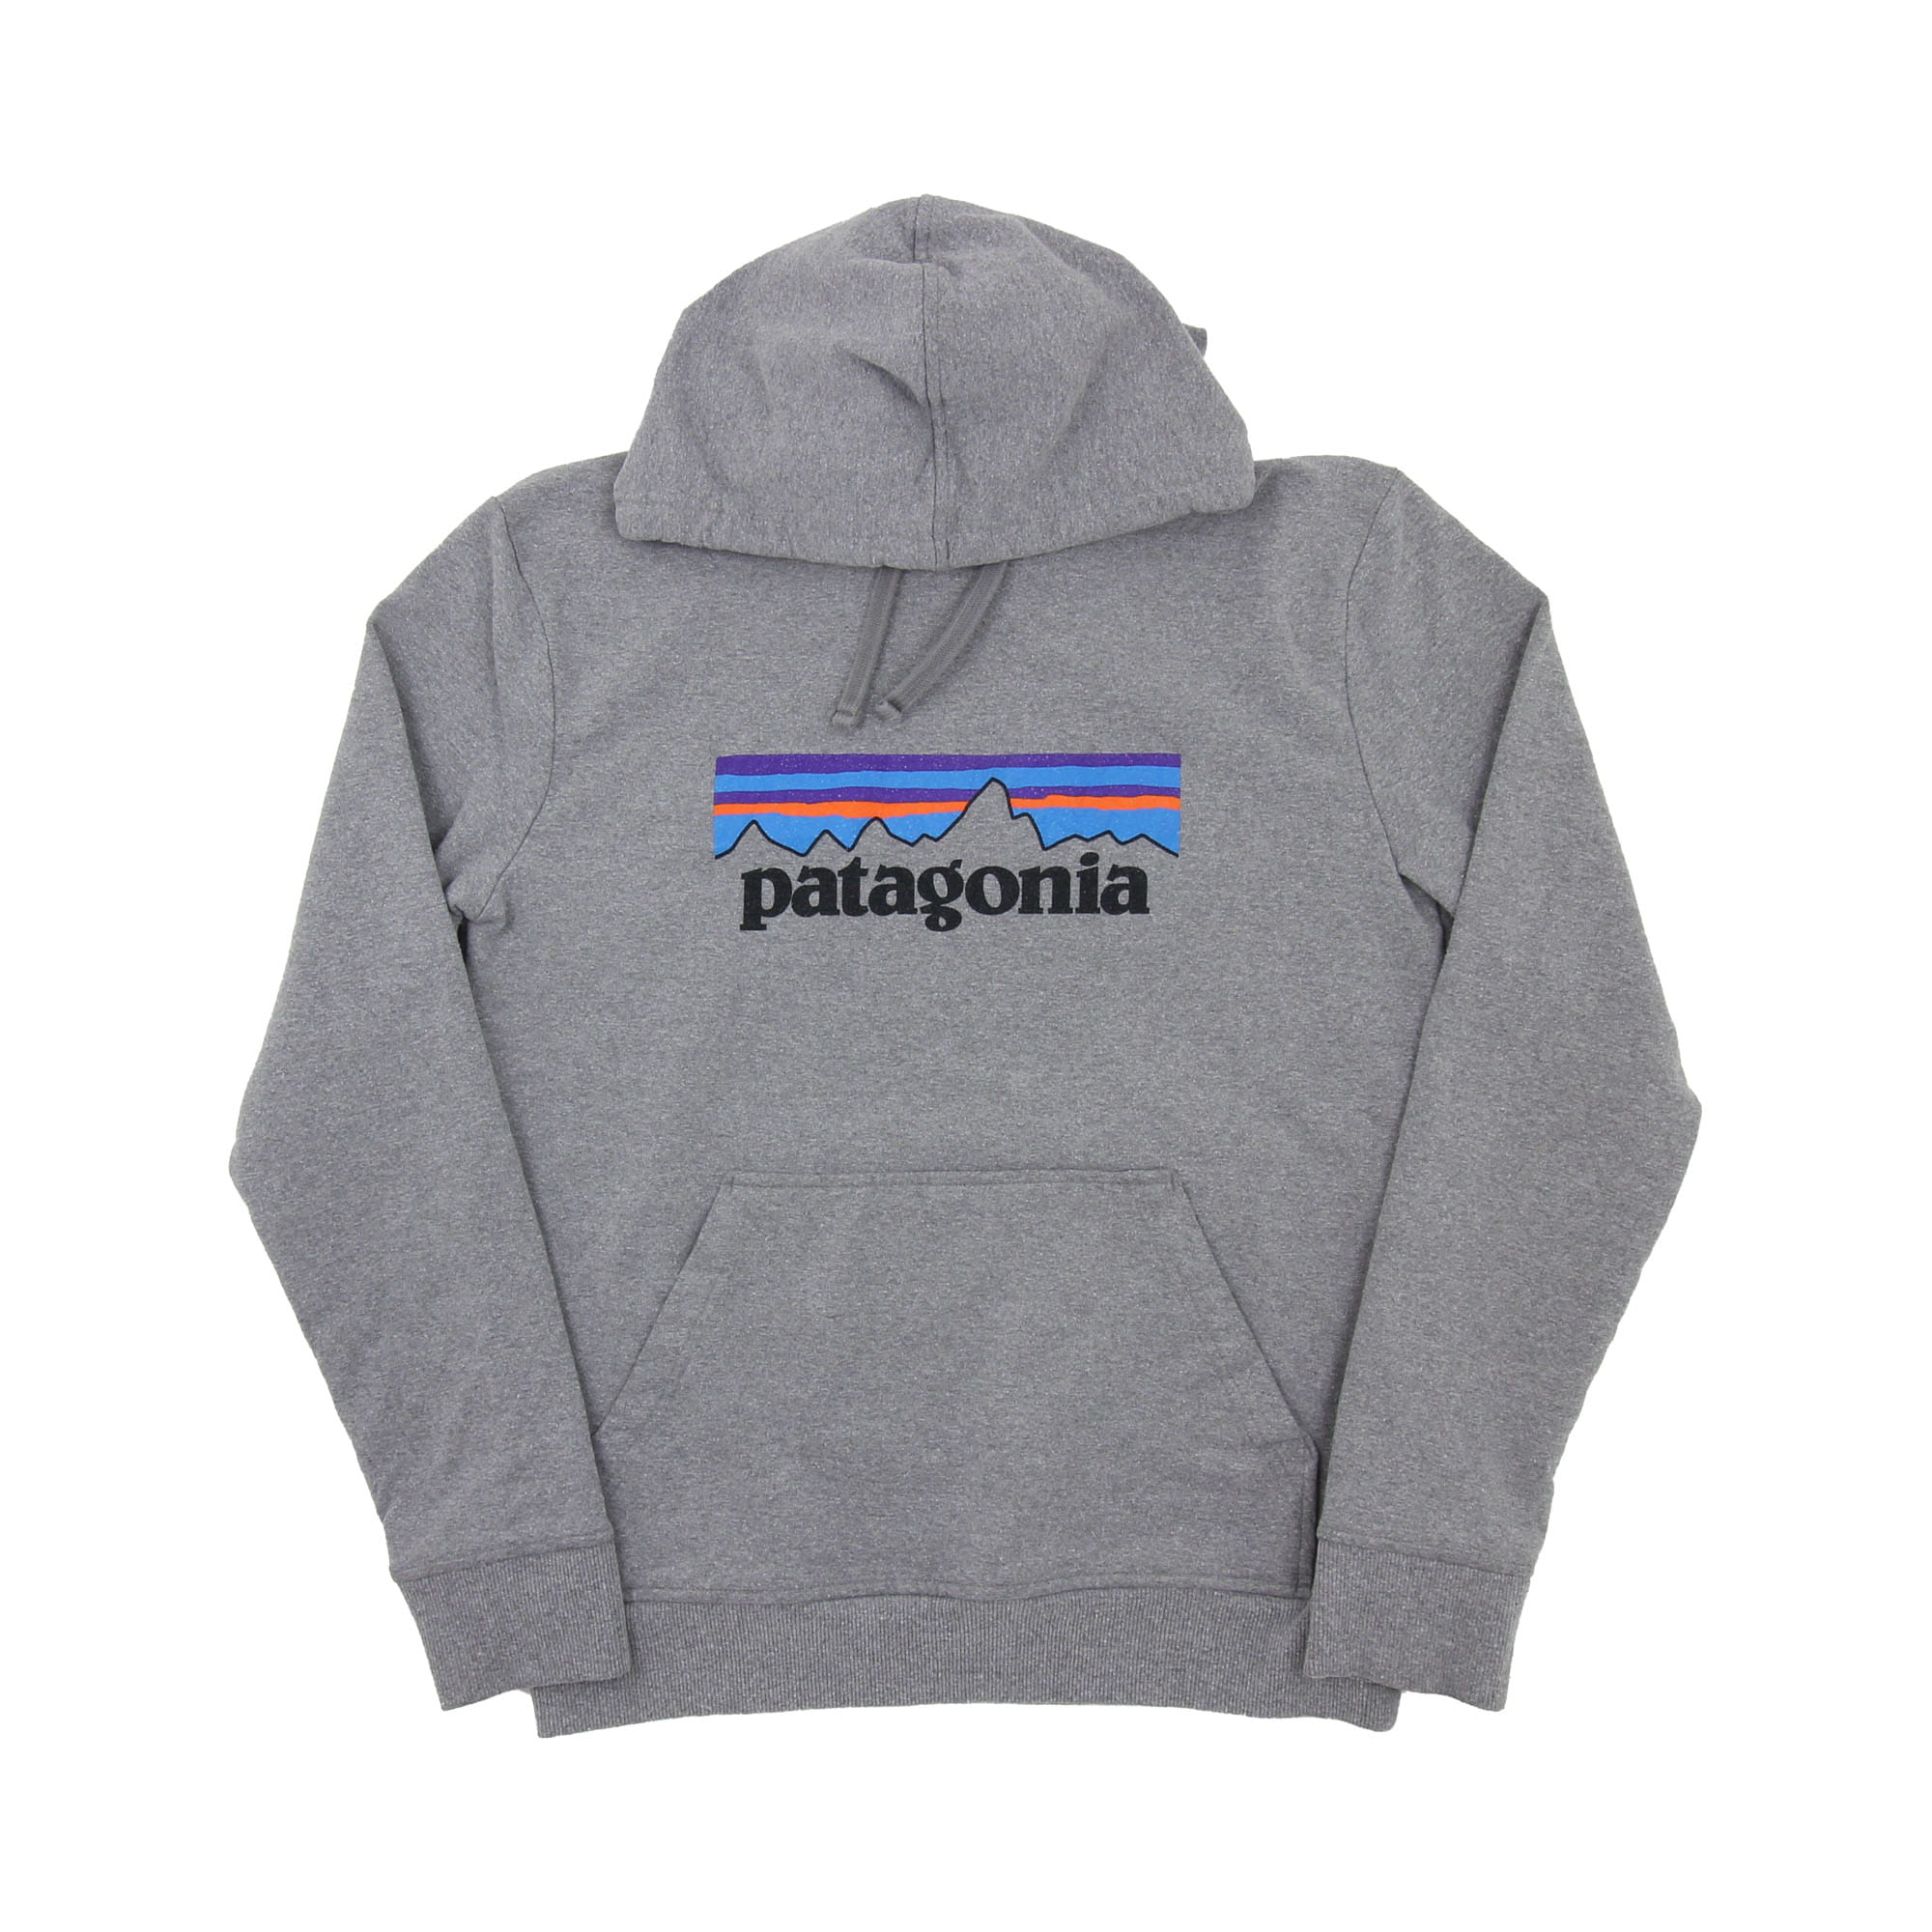 Patagonia Hoodie Grey -  S/M